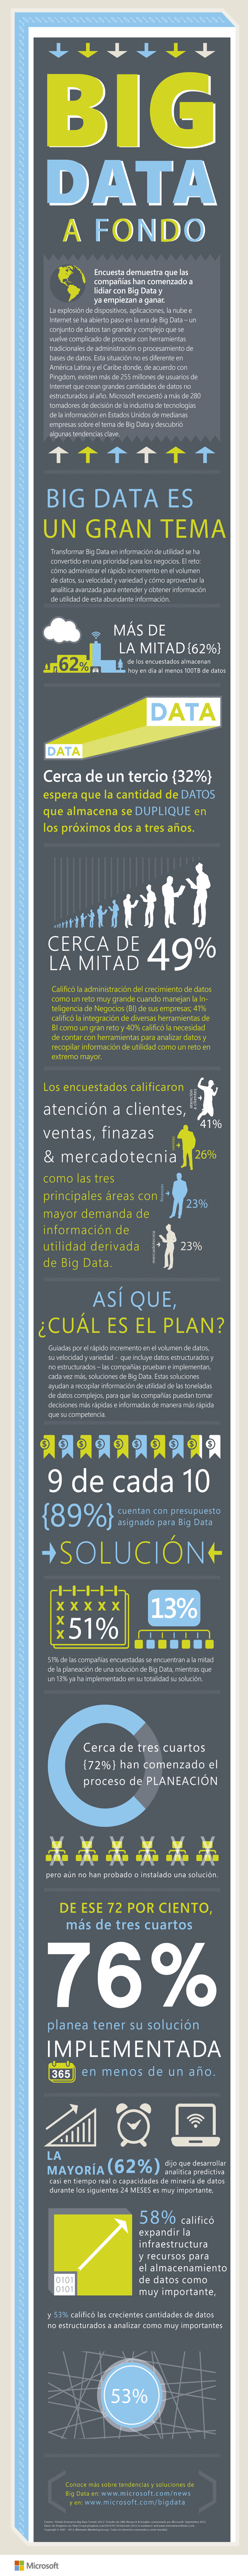 2013-Feb-8-Big-Data-PR-Campaign---Infographic-Latin-America